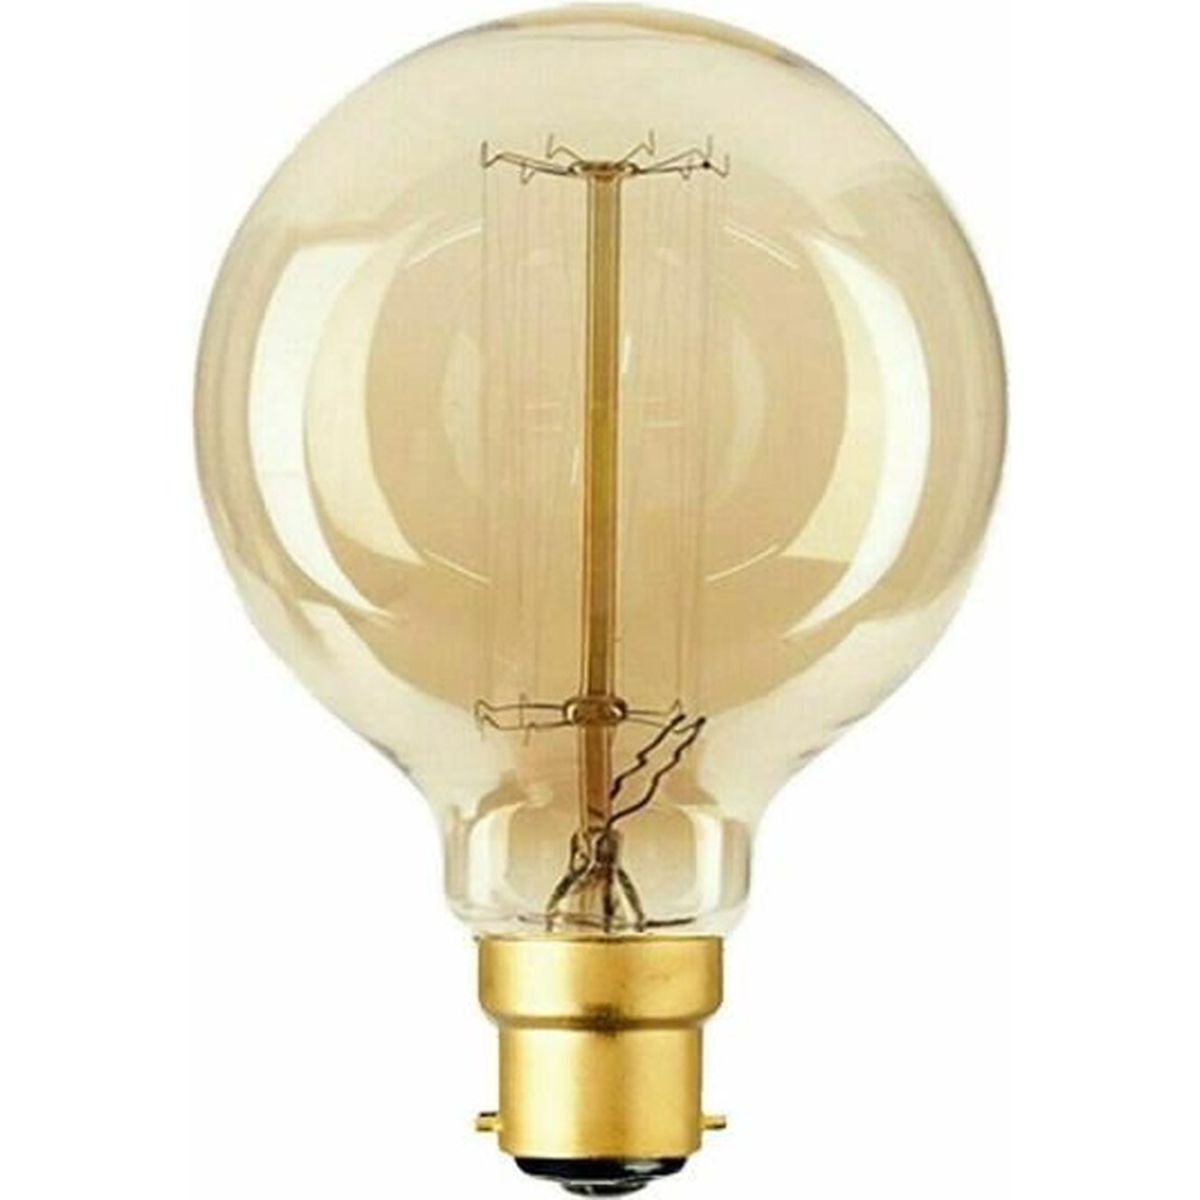 1 x 40W MAZDA décor orange Bc B22 Lampe décoratifs globe R95 vintage Ampoule